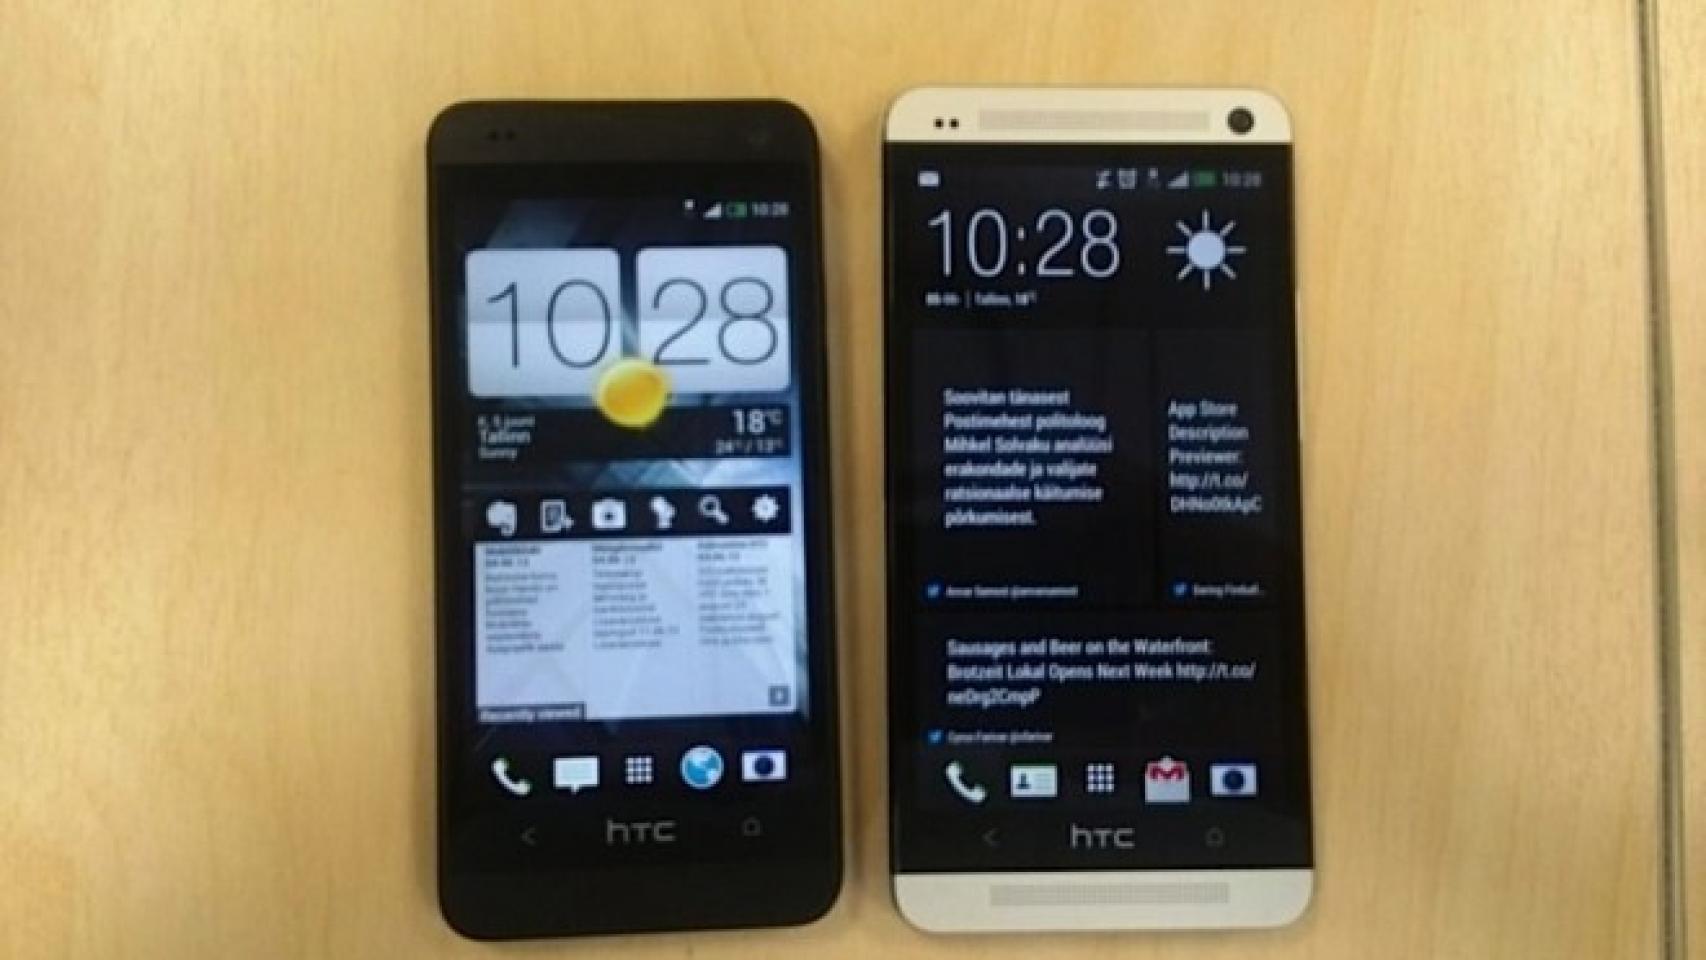 El HTC One Mini se filtra con su pantalla 720p de 4.3 pulgadas y cámara Ultrapixel